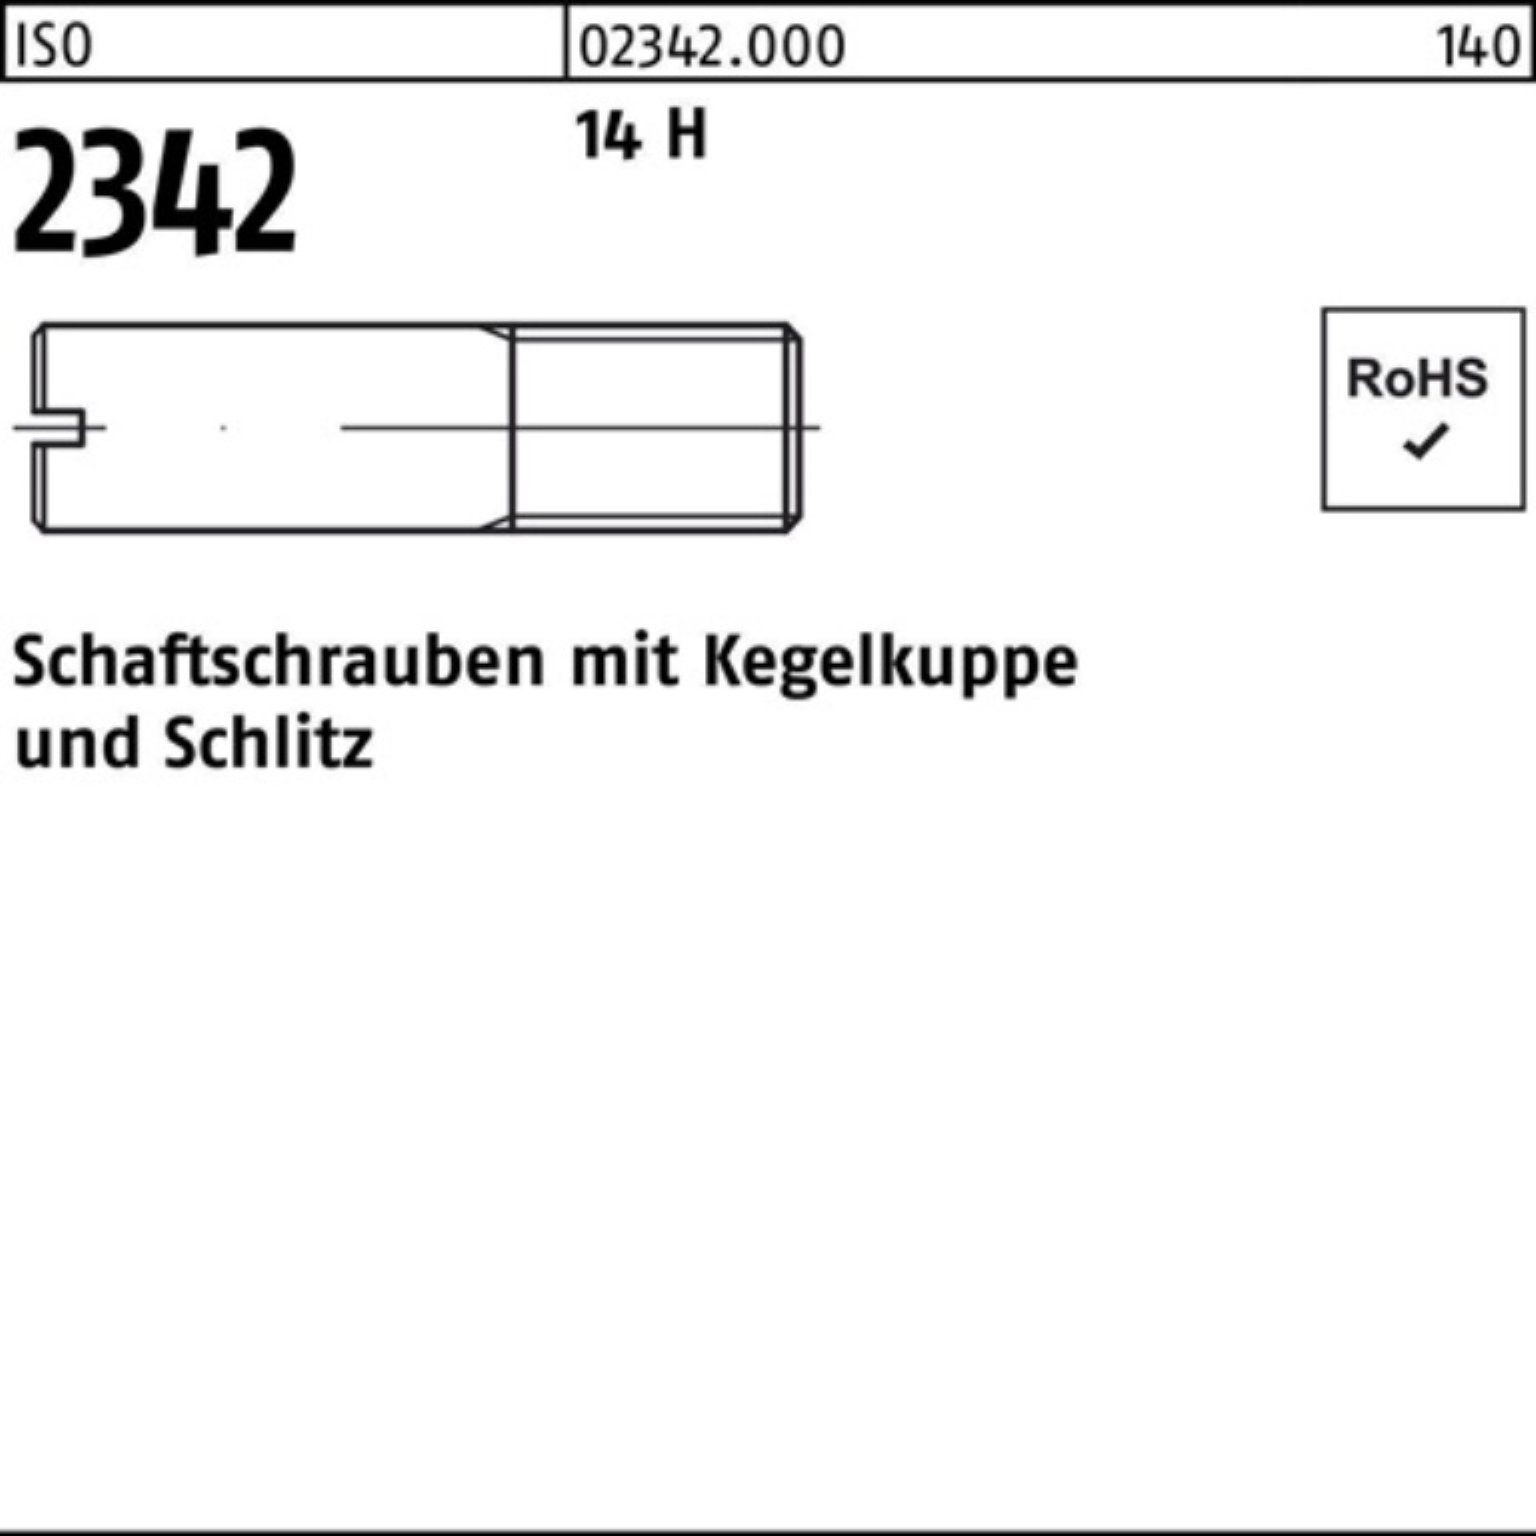 Reyher Schraube ISO 100er 16 M5x 2342 H Kegelkuppe/Schlitz Schaftschraube 14 100 Pack